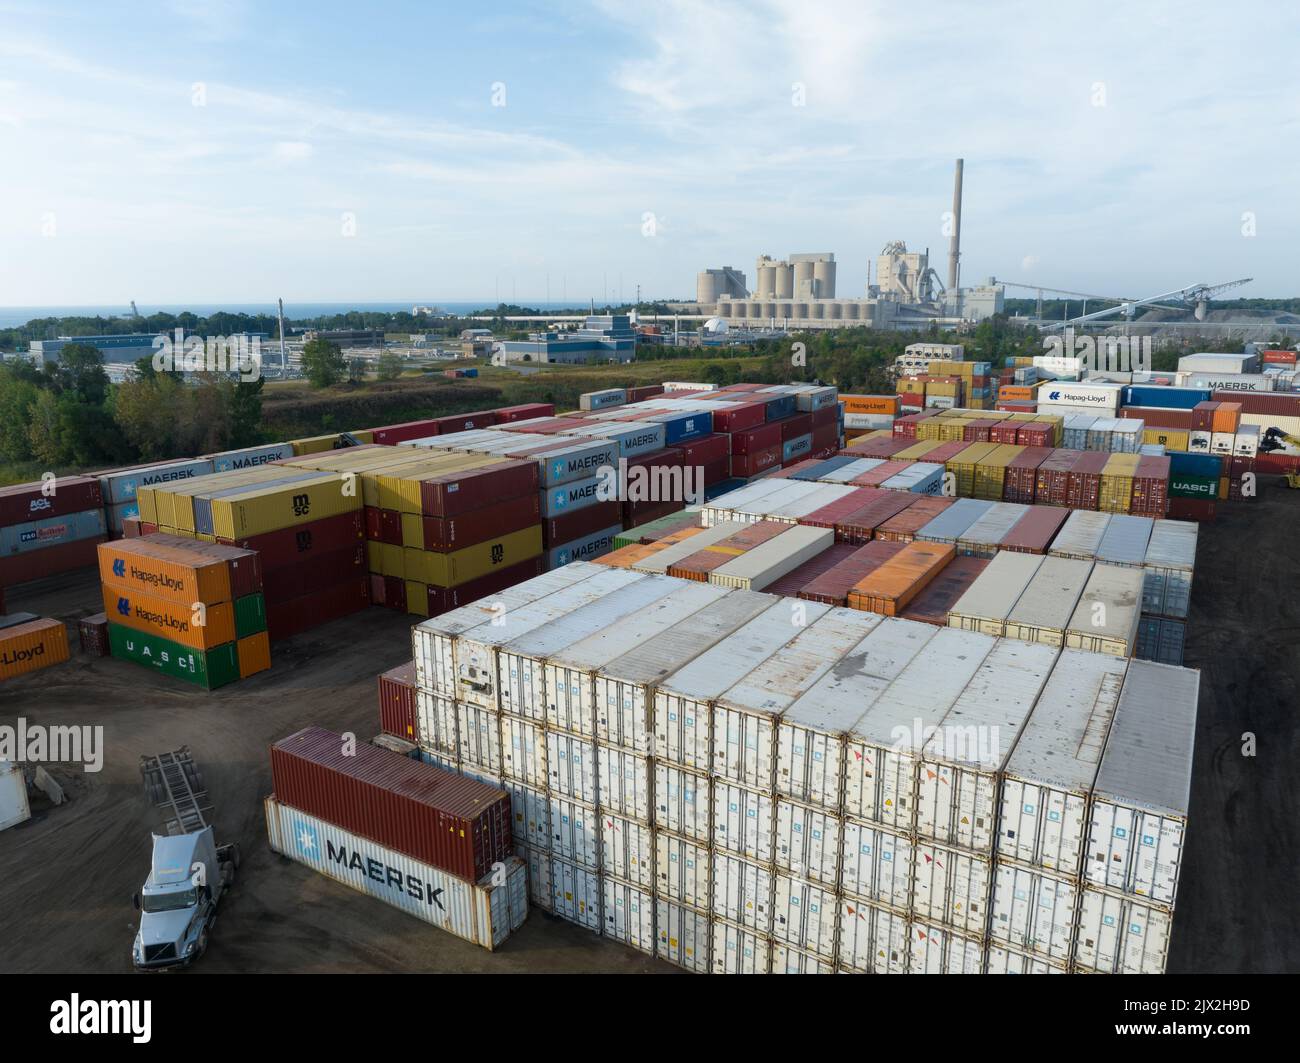 Une vue aérienne au-dessus d'un terminal de conteneurs d'expédition, avec des transporteurs comme les conteneurs Hapag-Lloyd et Maersk dans le chantier de fret dans un secteur industriel. Banque D'Images